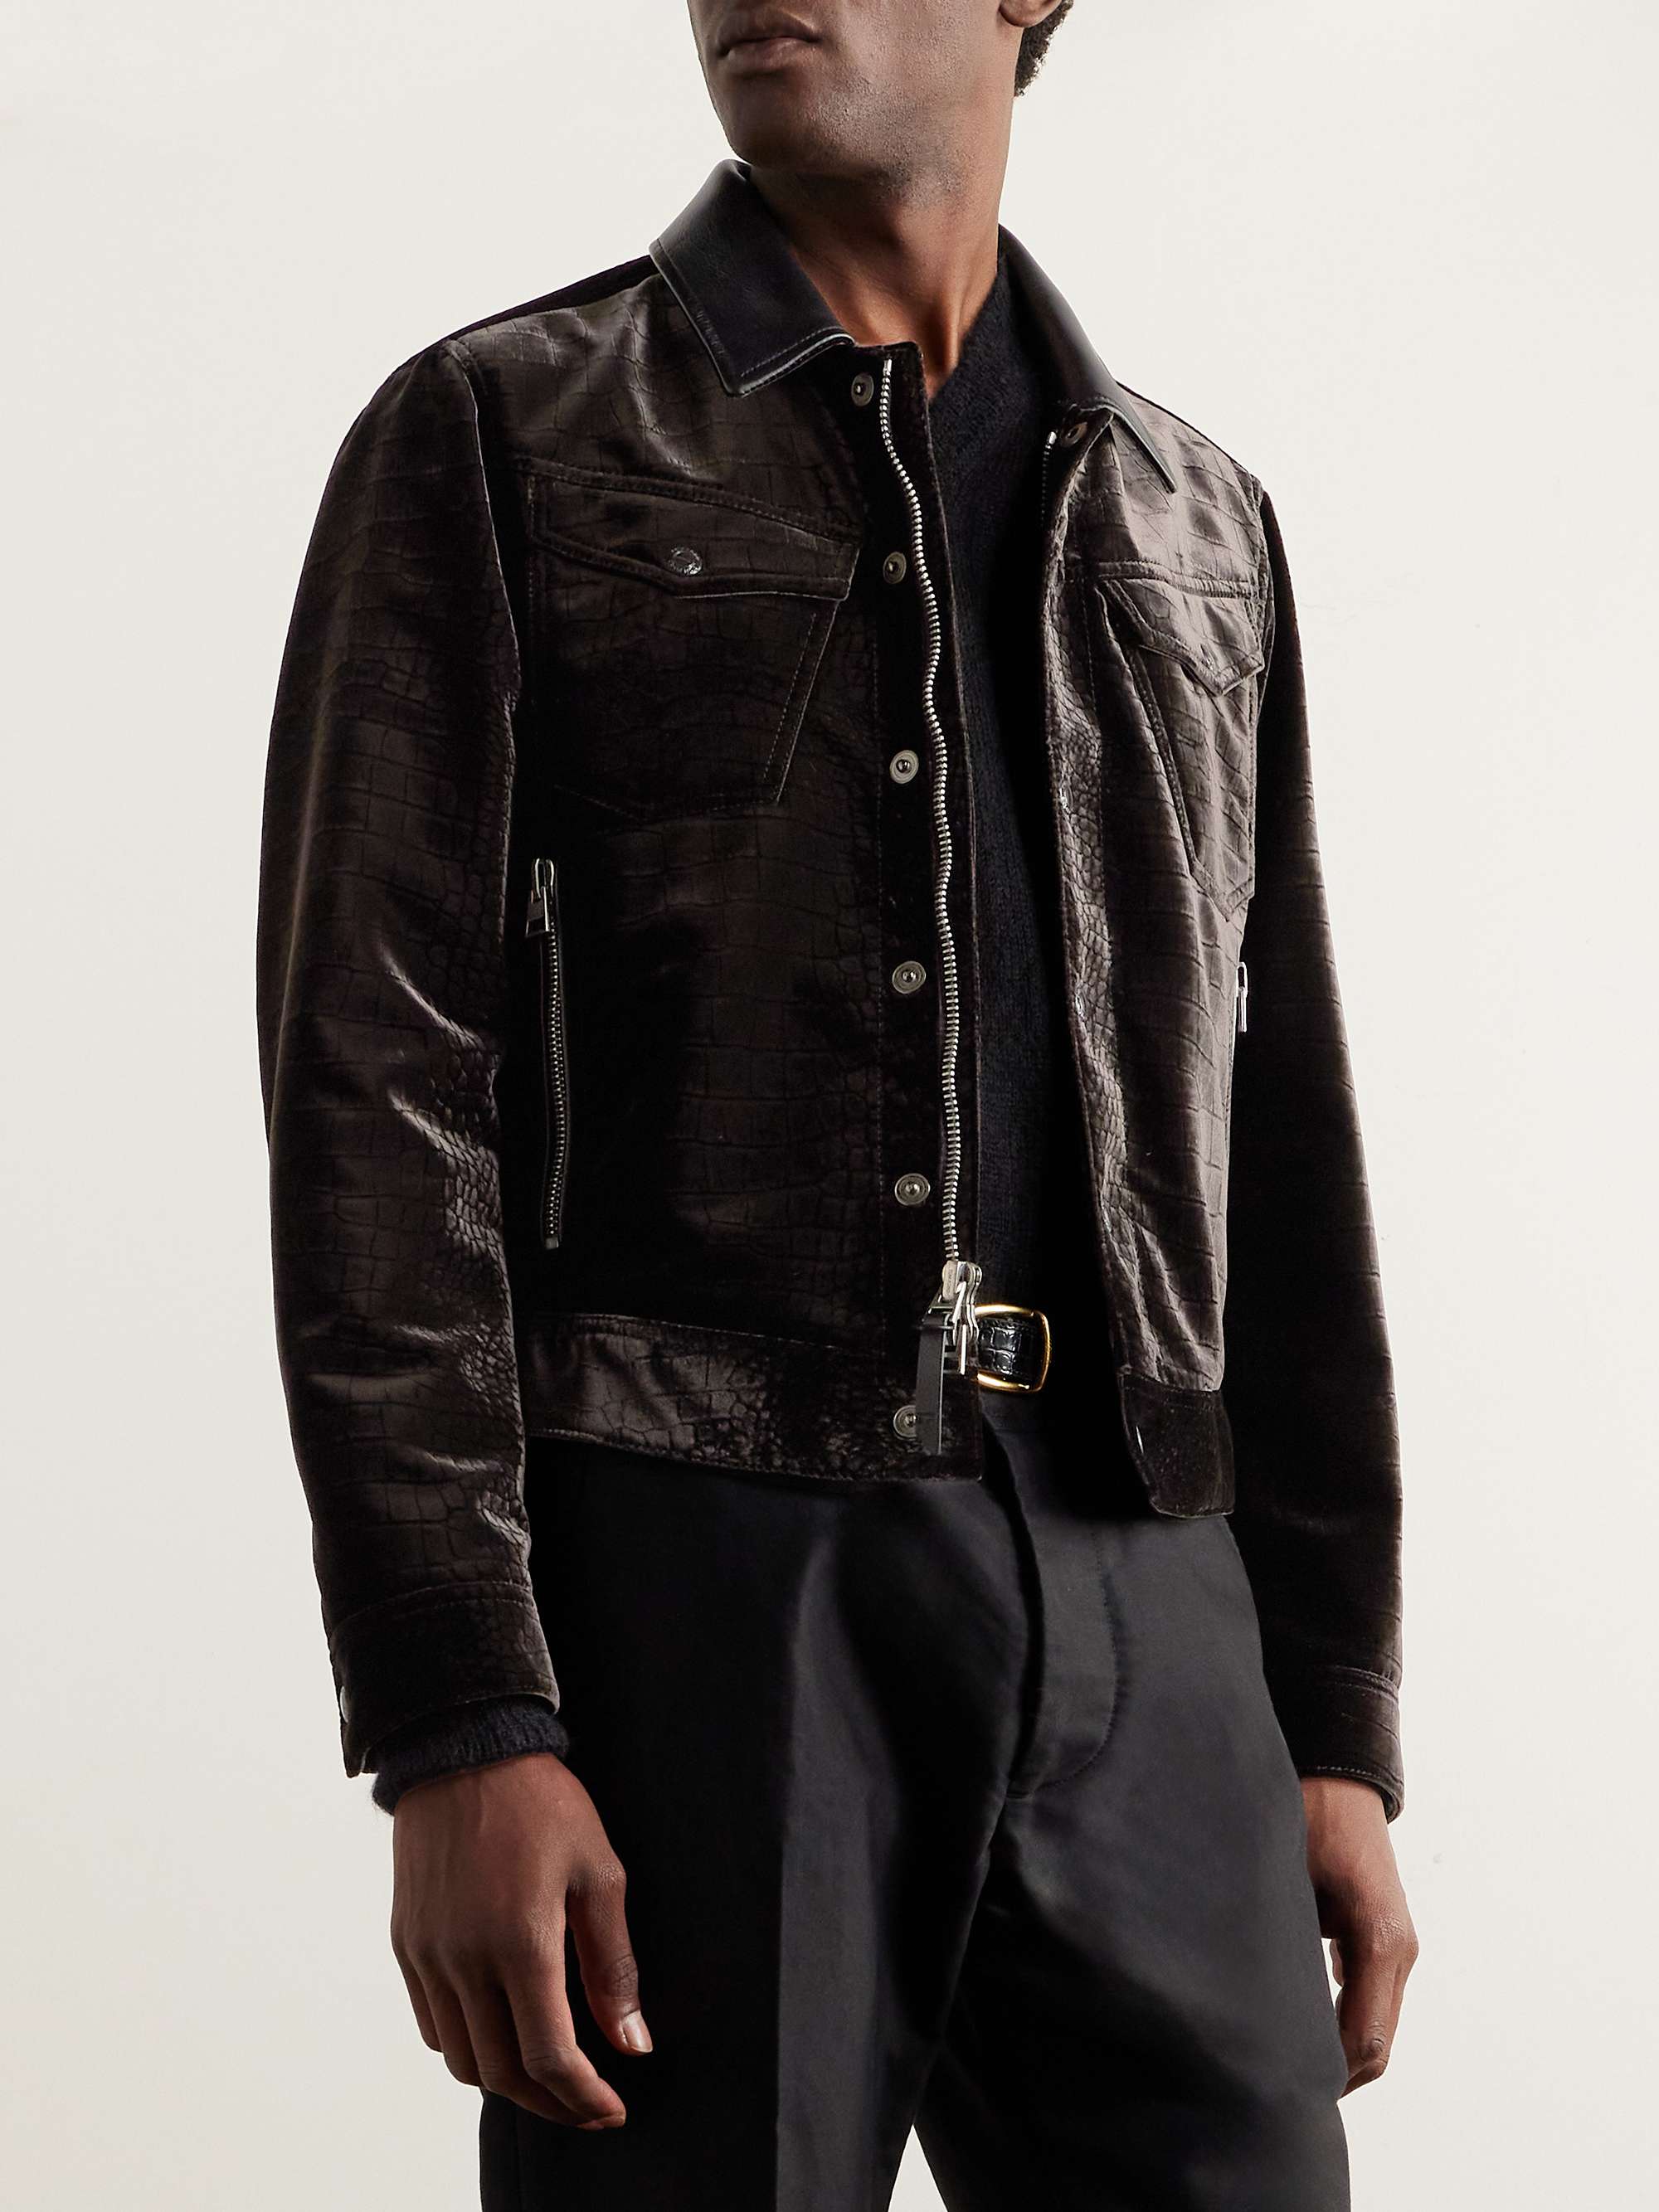 TOM FORD Leather-Trimmed Croc-Effect Velvet Jacket for Men | MR PORTER